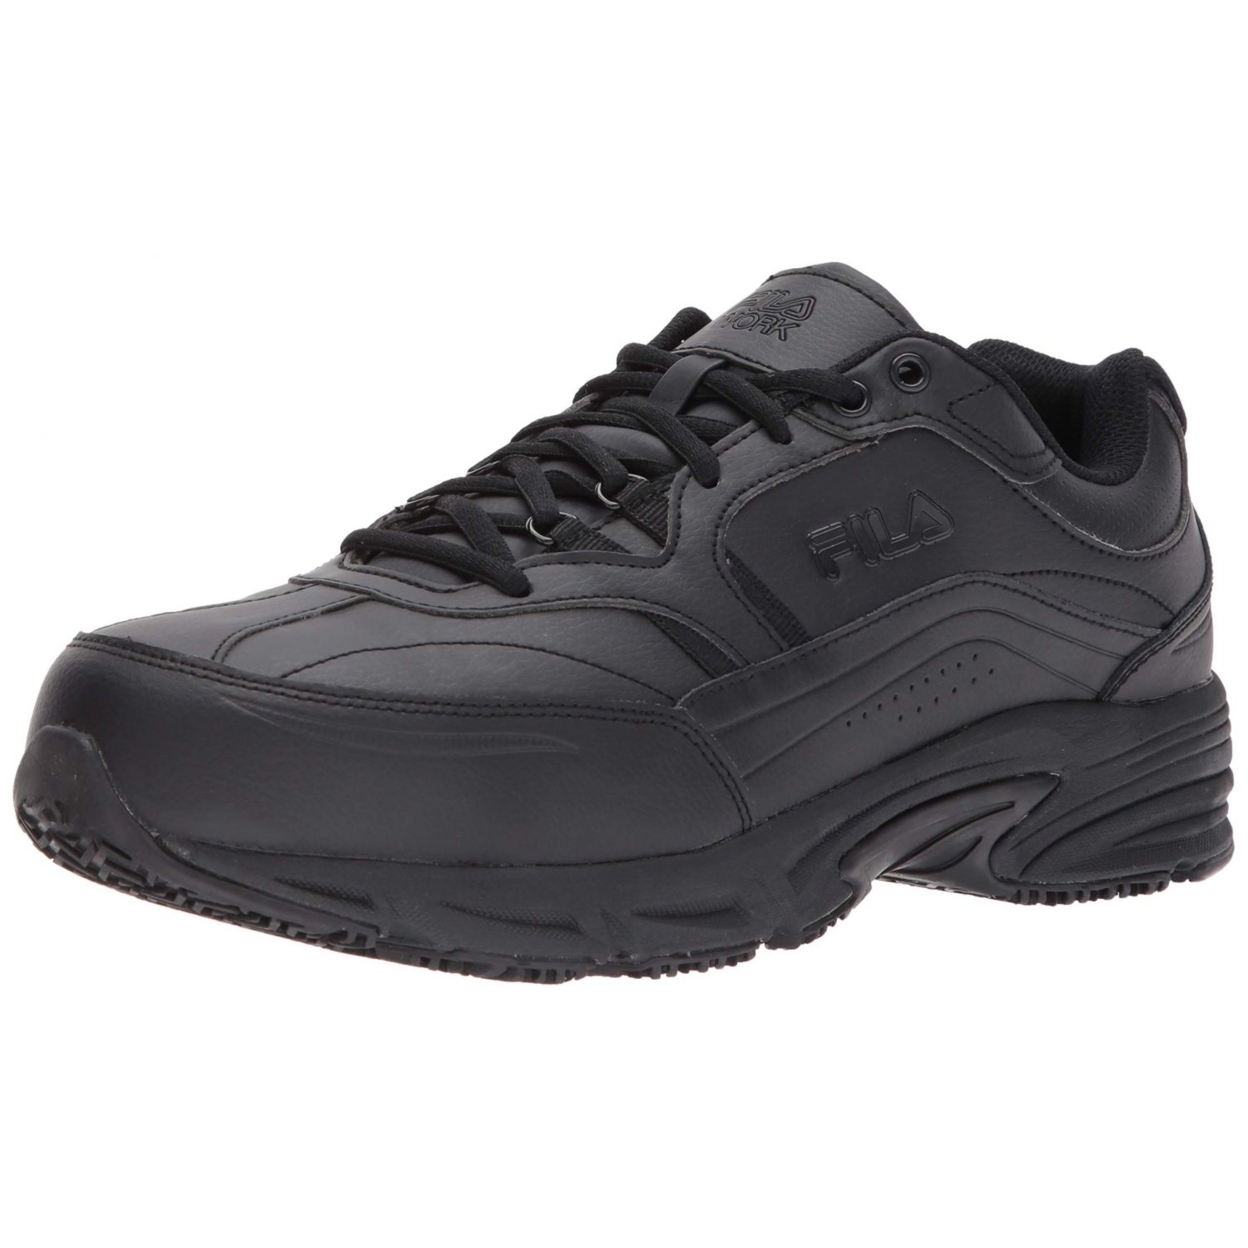 Fila Men's Memory Workshift Slip Resistant Steel Toe Work Shoes Hiking BLK/BLK/BLK - BLK/BLK/BLK, 8.5